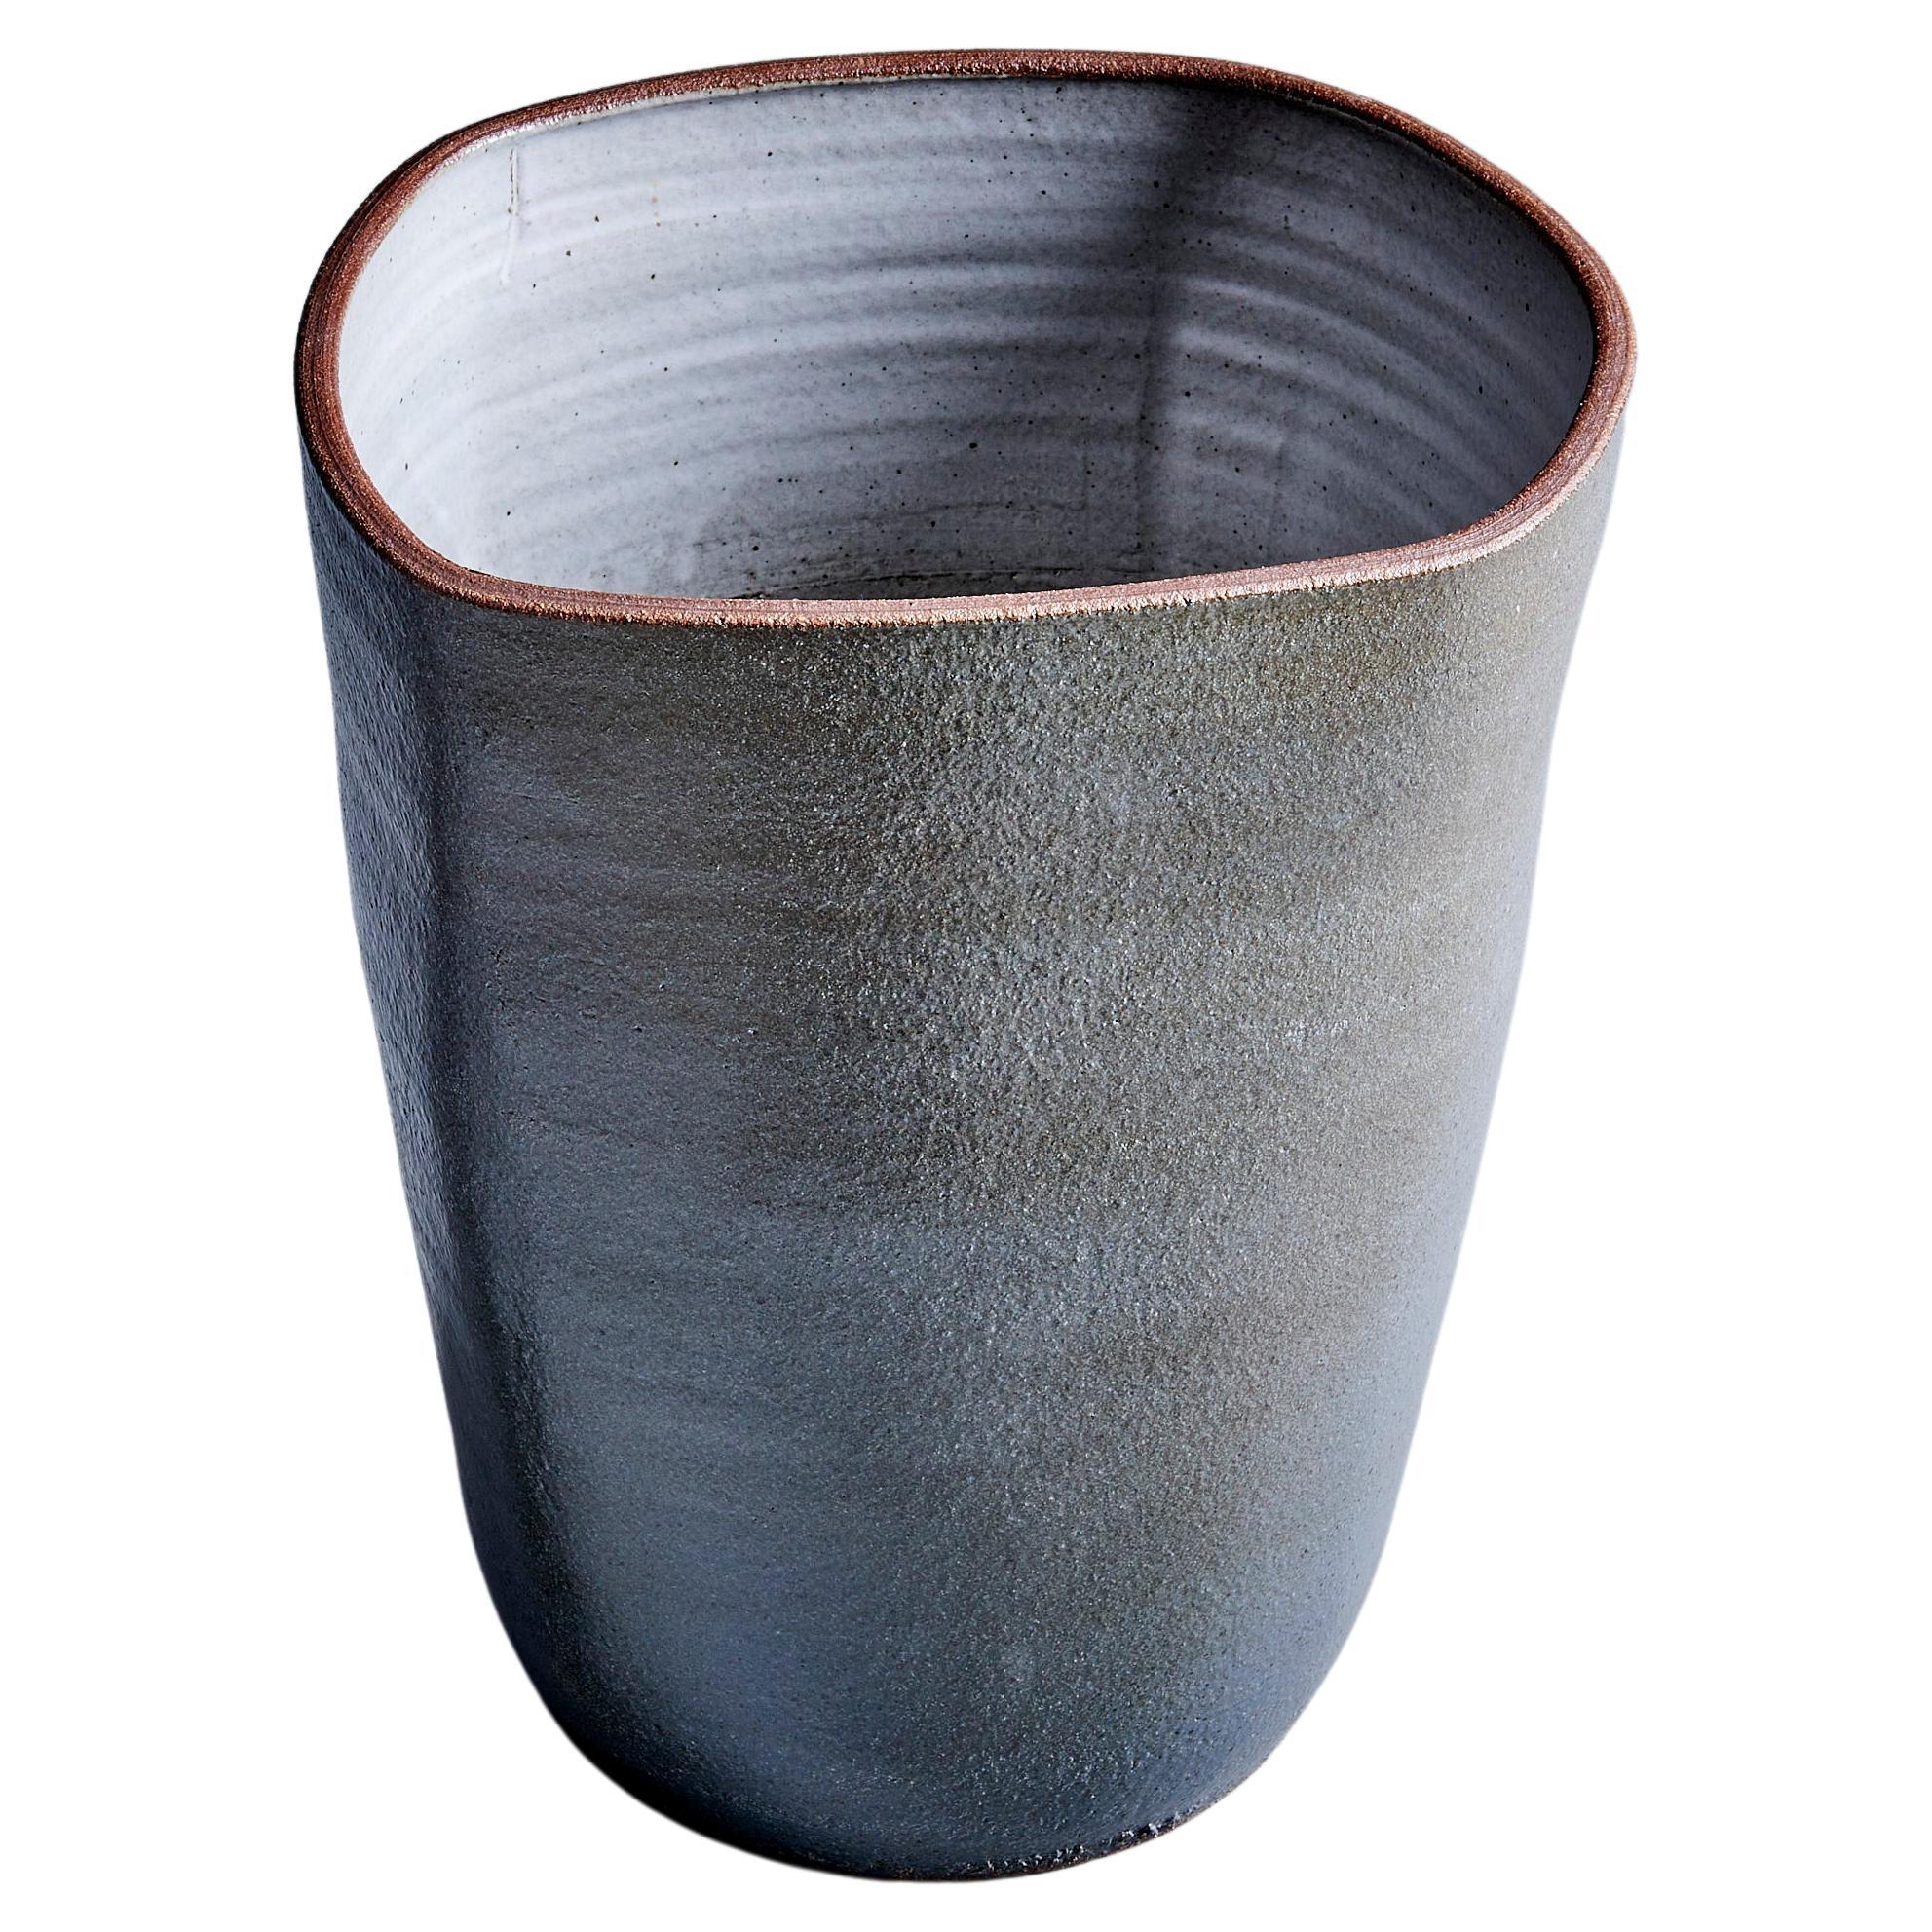 Brent Bennett Ceramic Planter in Grey, USA - 2022